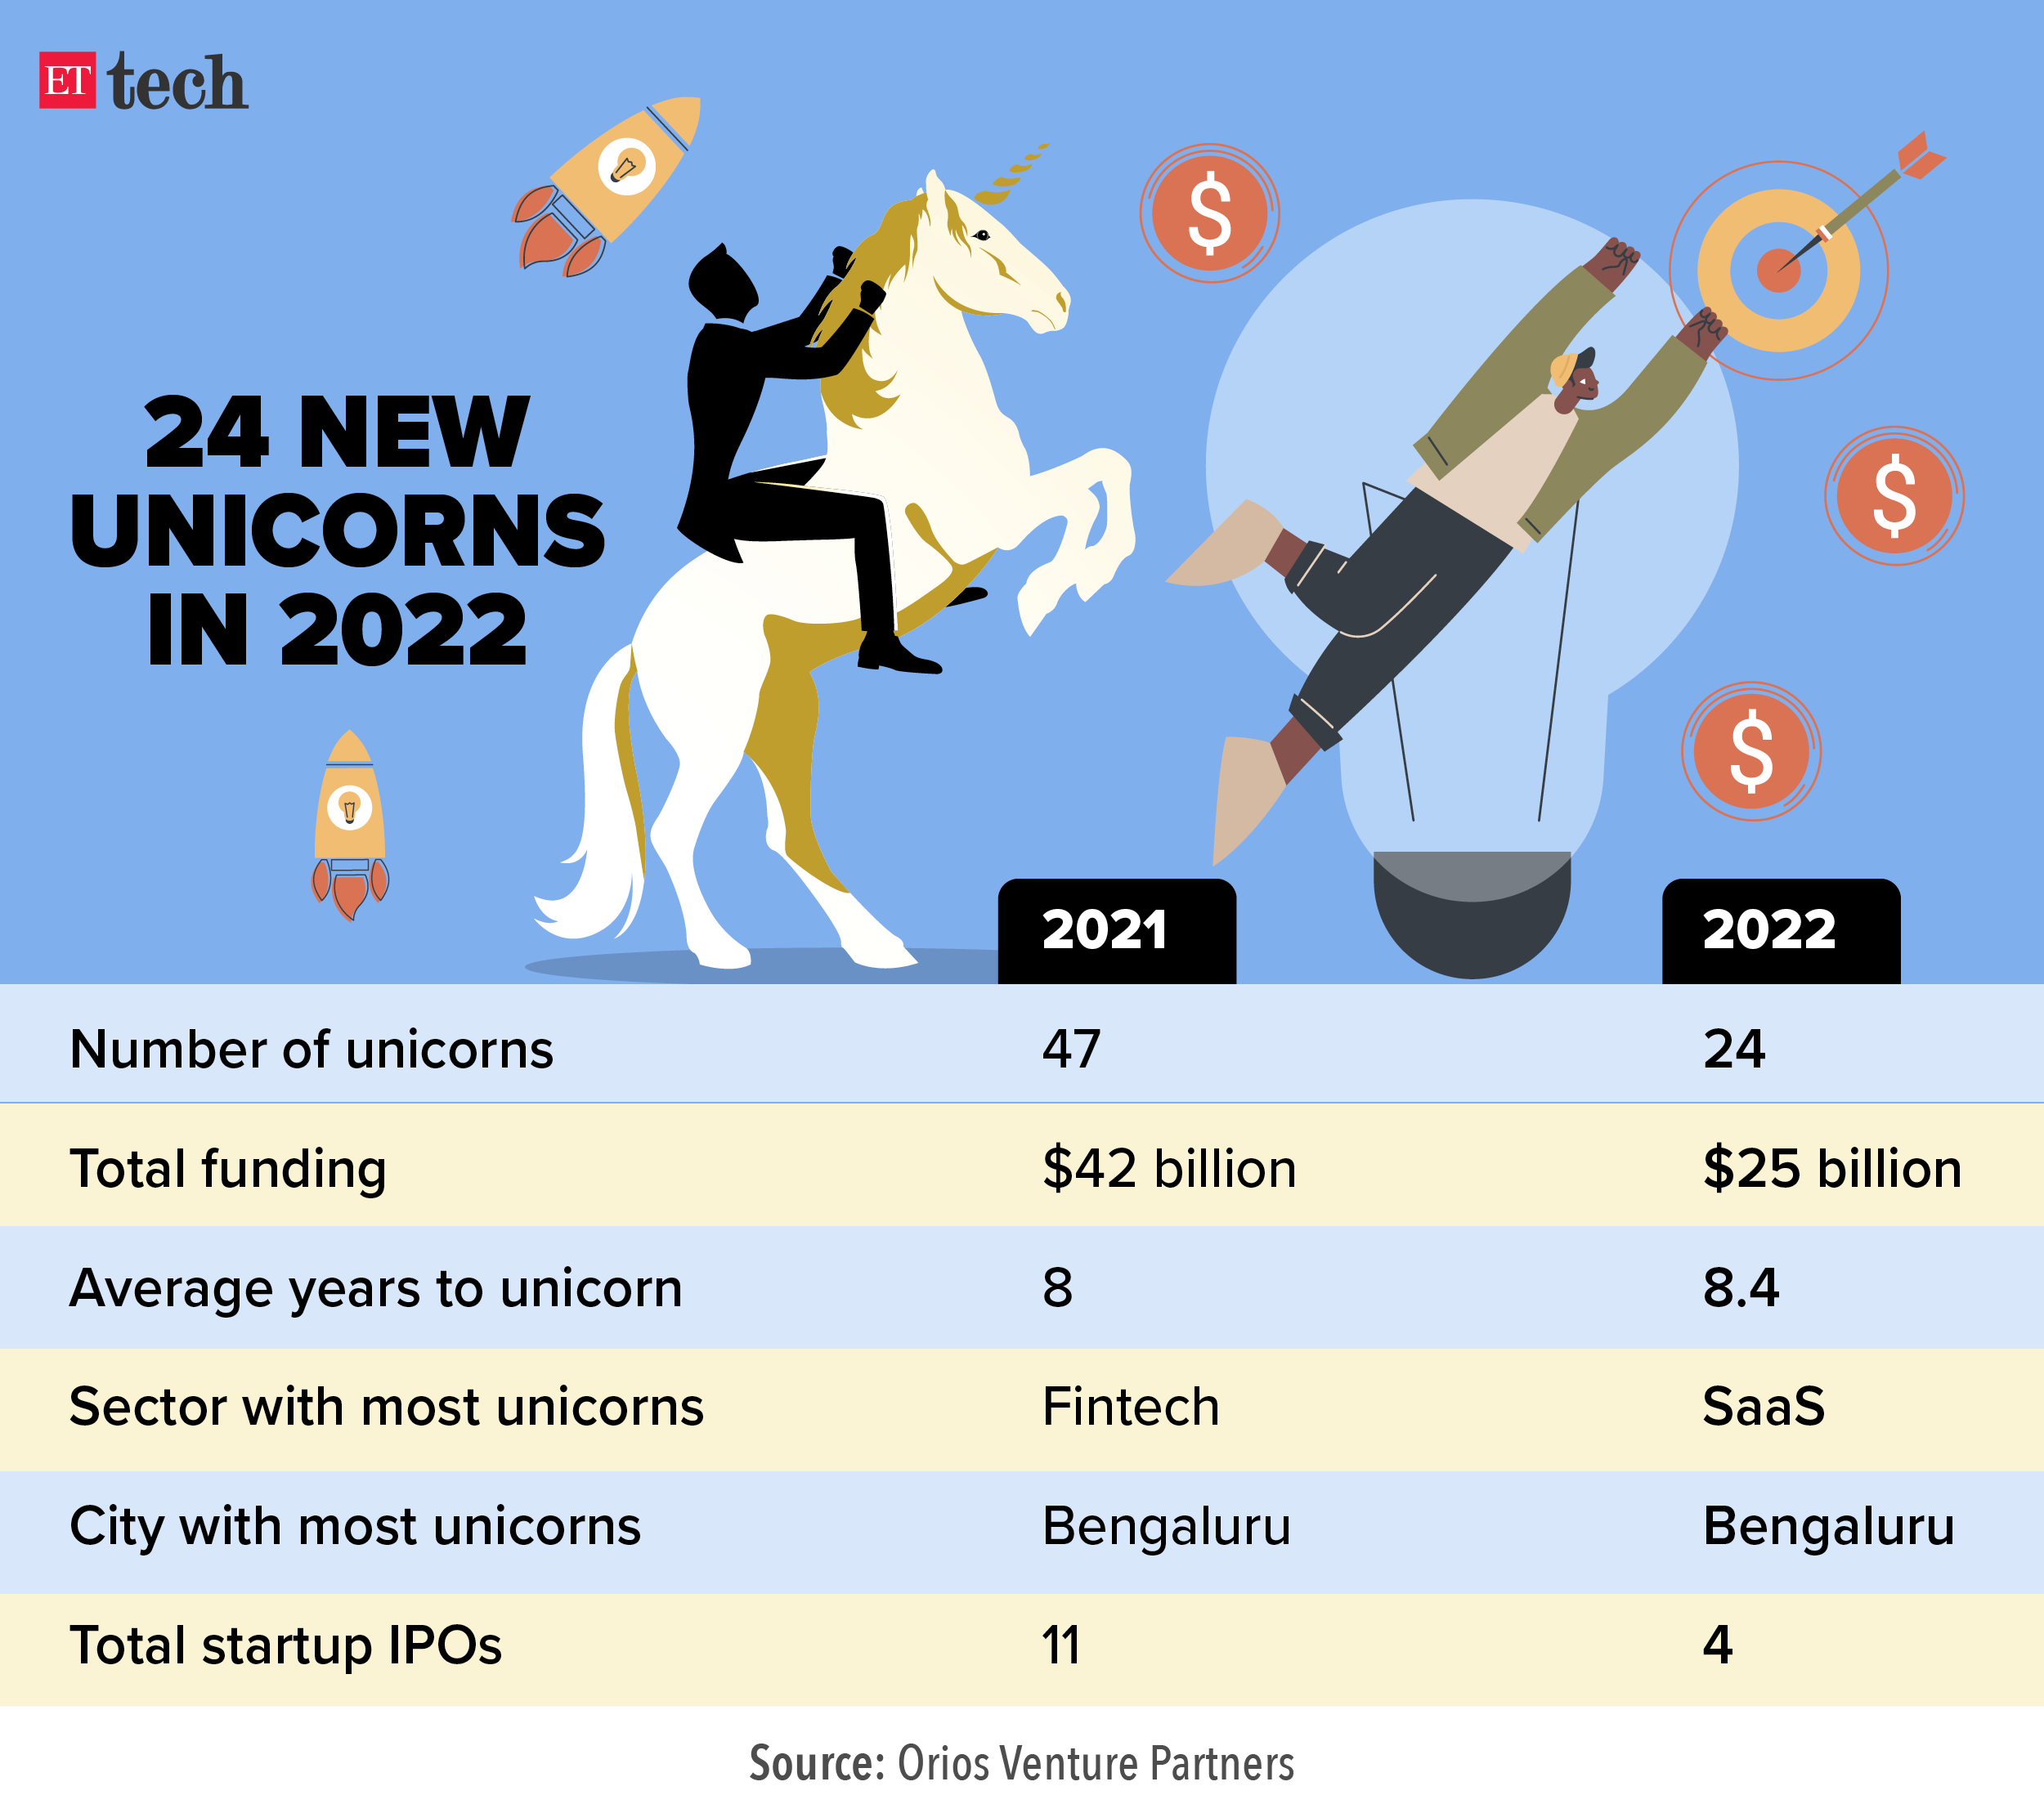 24 new unicorns in 2022